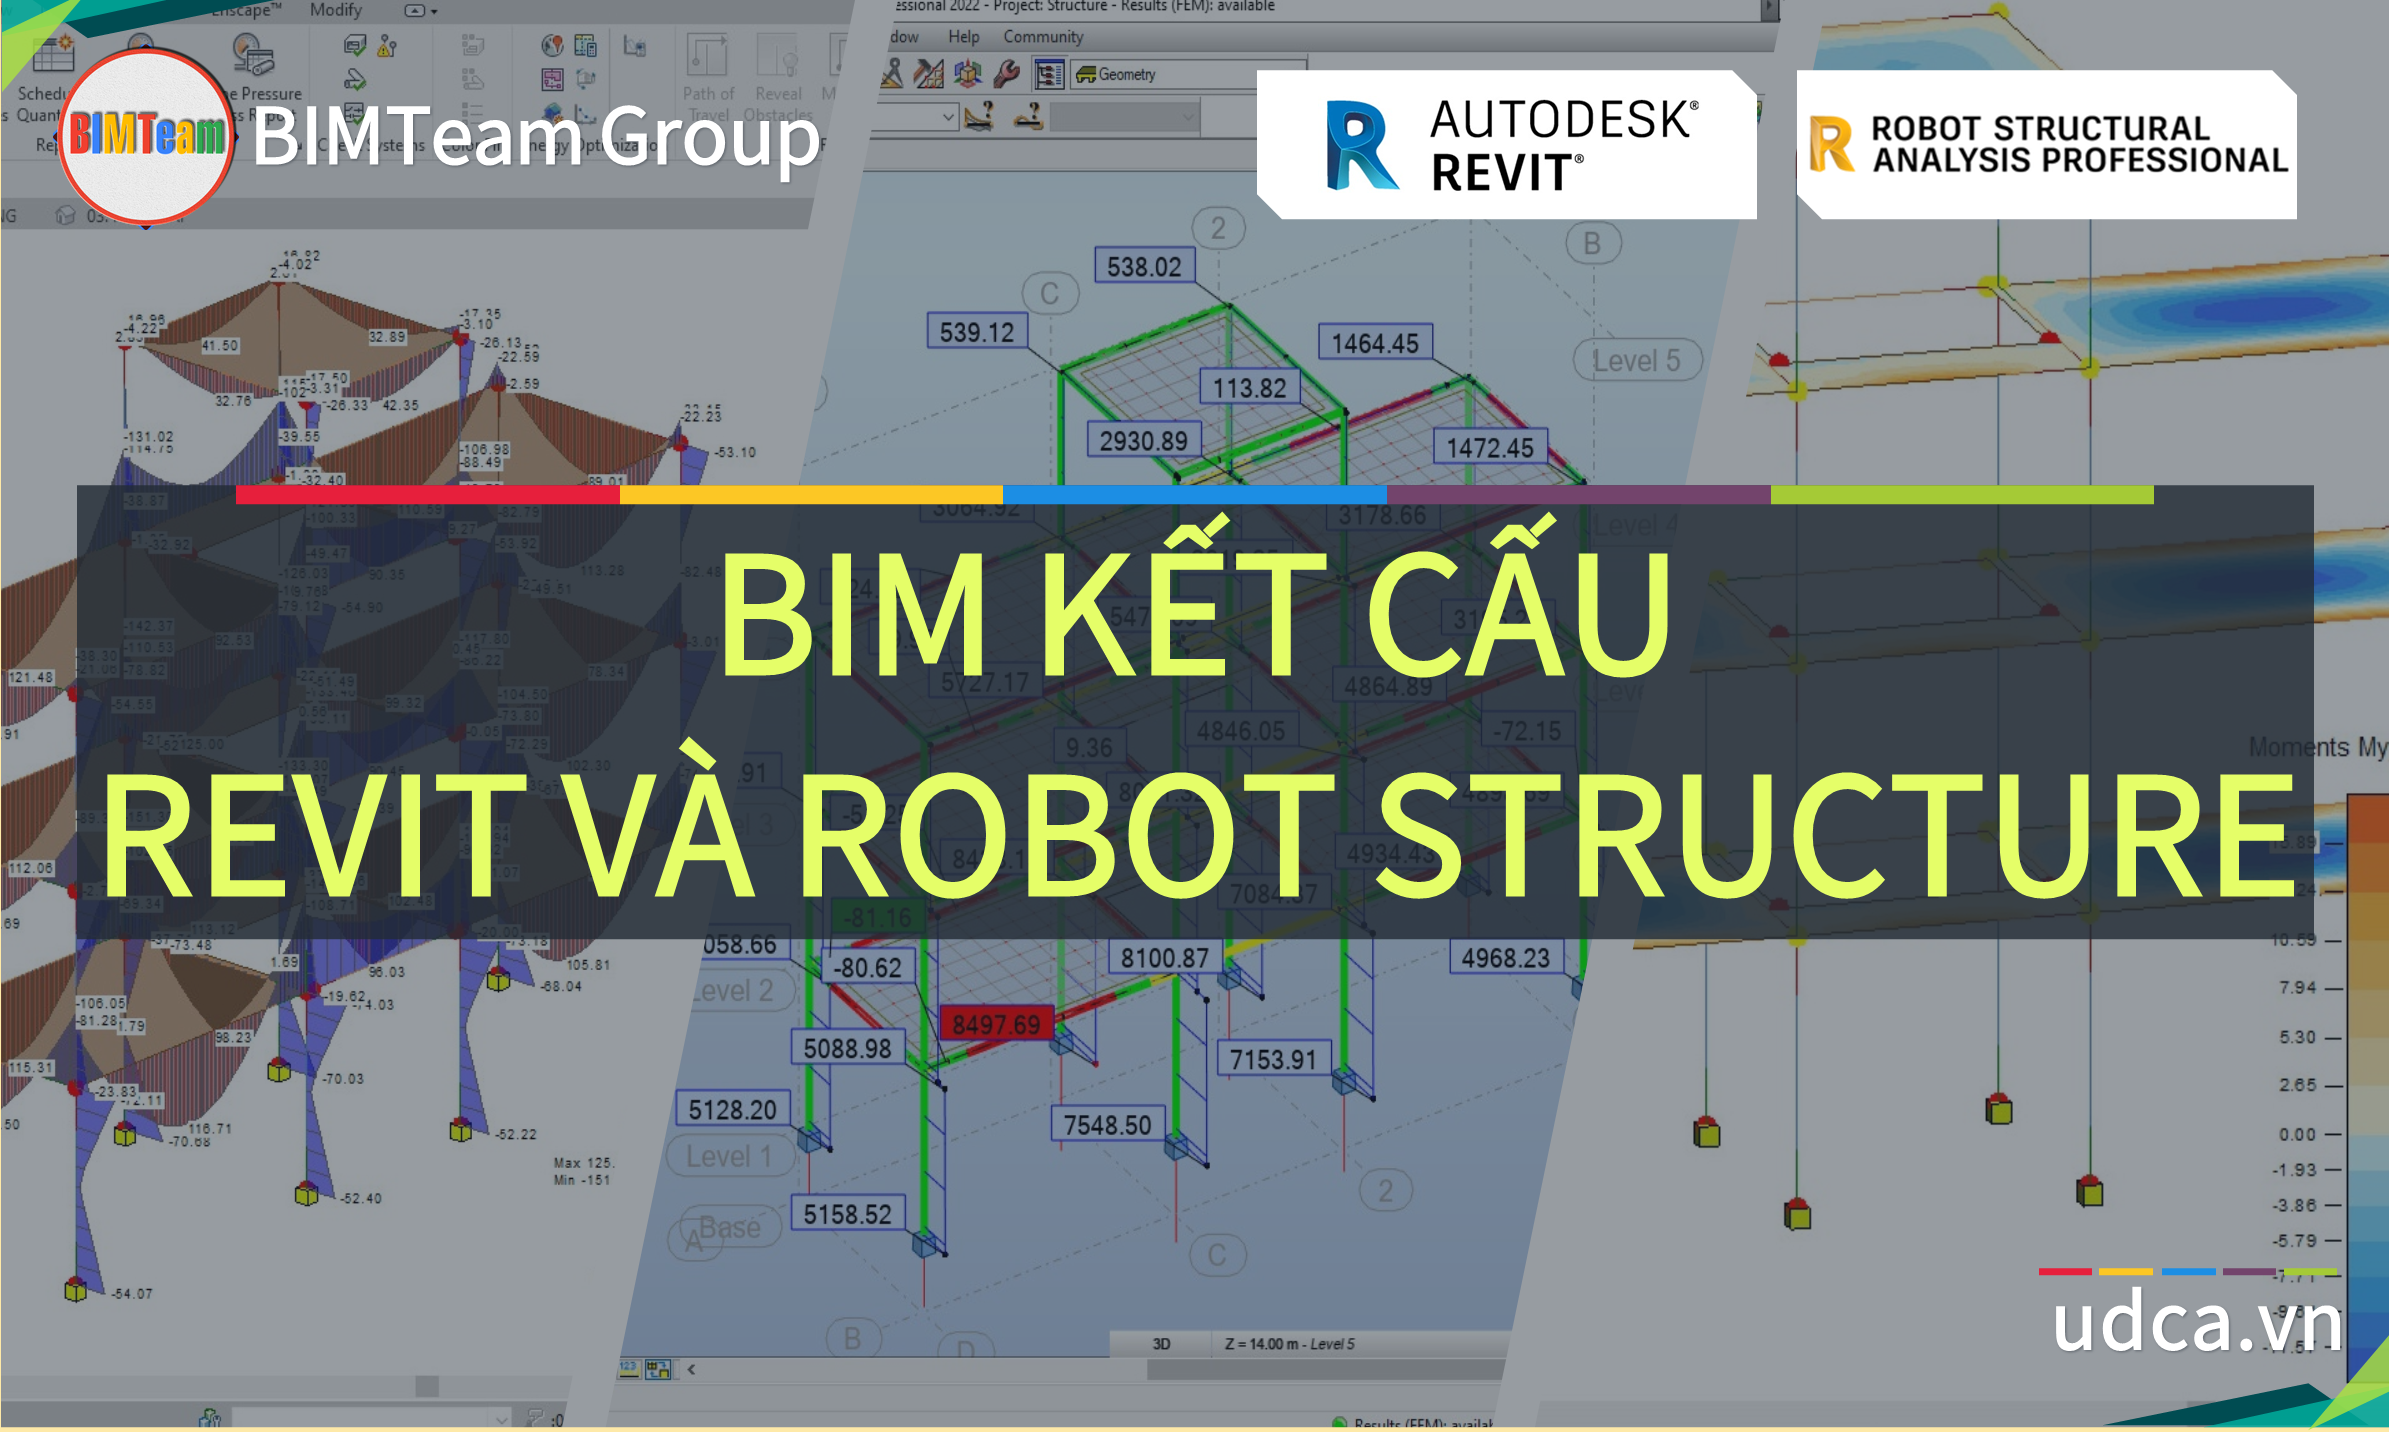  revit robot - giải pháp robot tự động hóa gửi từ revit sang cơ sở dữ liệu GIS